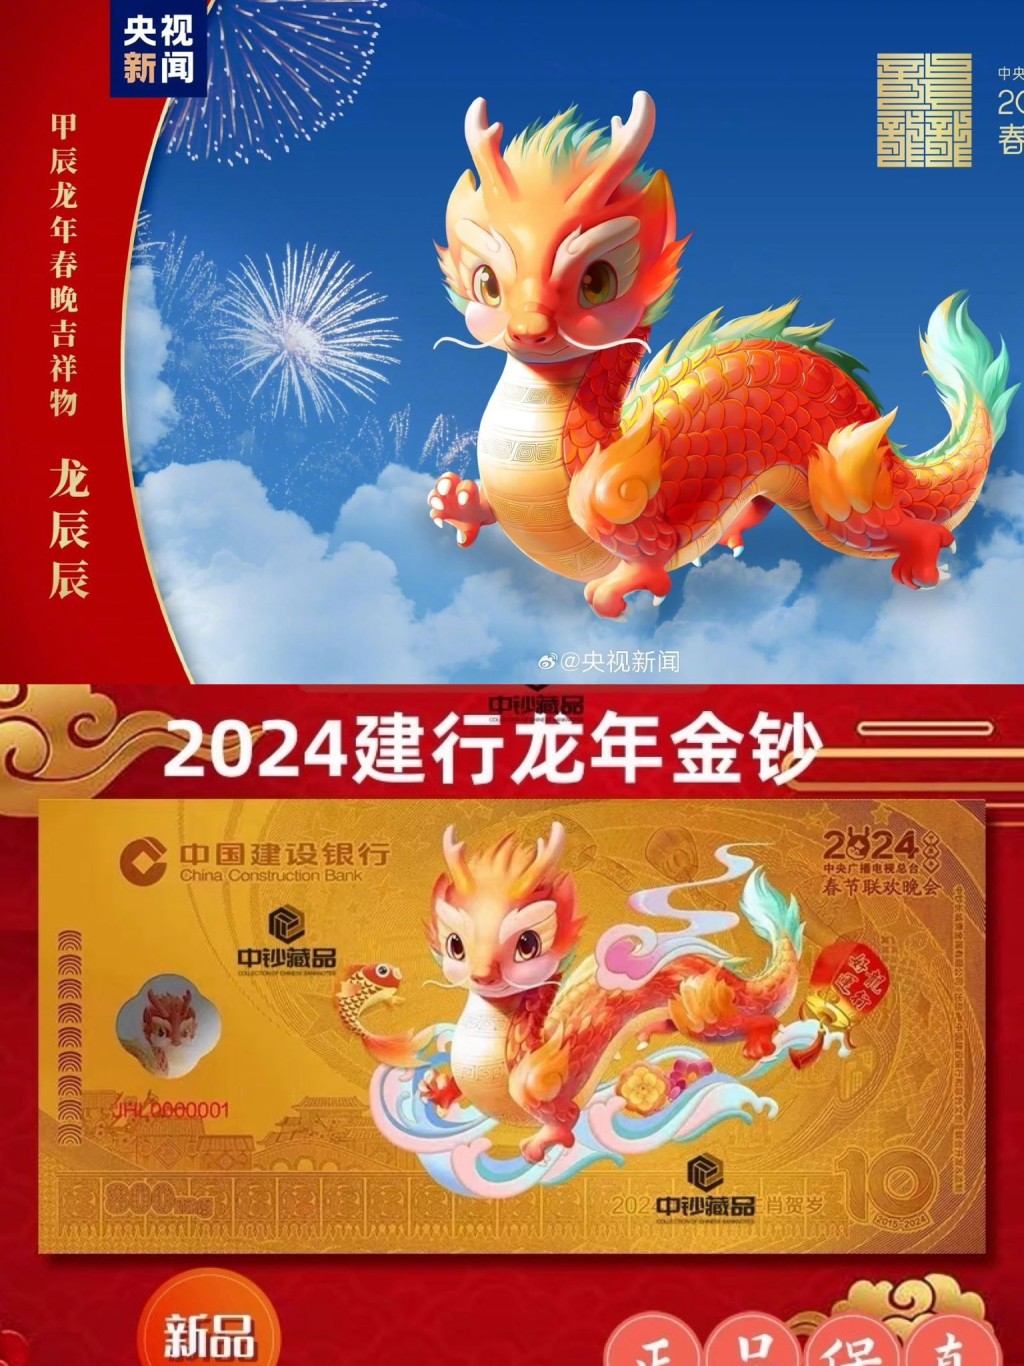 有網友發現「建設銀行龍年金鈔」中的吉祥物（下），與「龍辰辰」（上）形像高度一致。網絡圖片